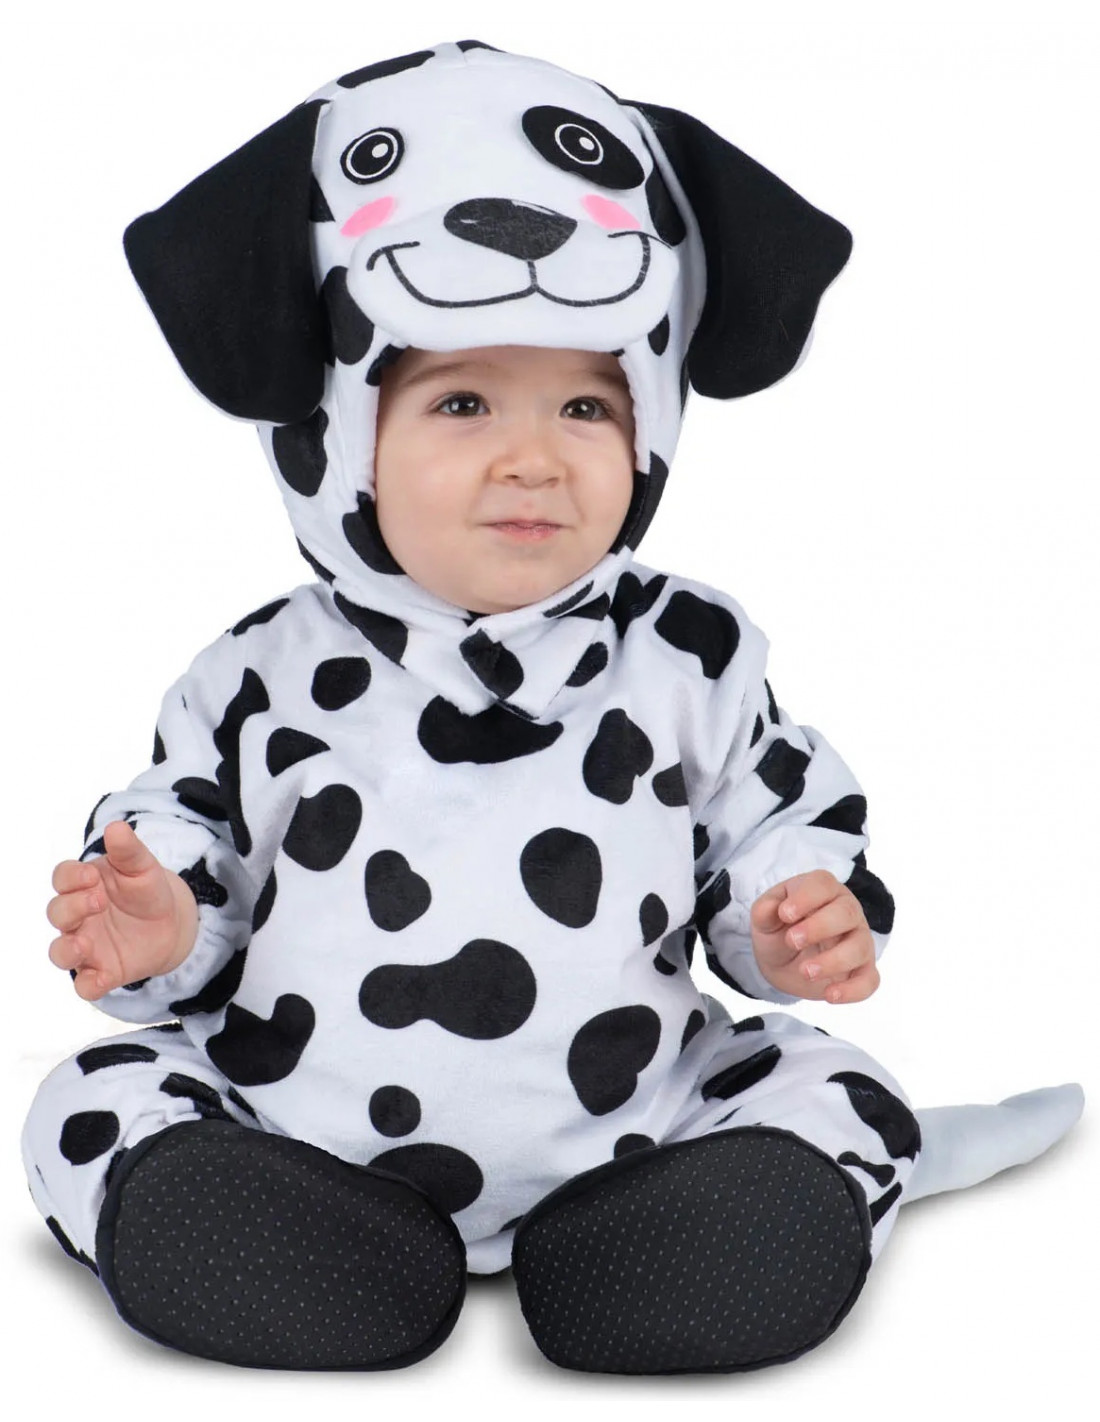 Disfraz de vaca bebé 18 - 24 meses (90 cm) de segunda mano por 10